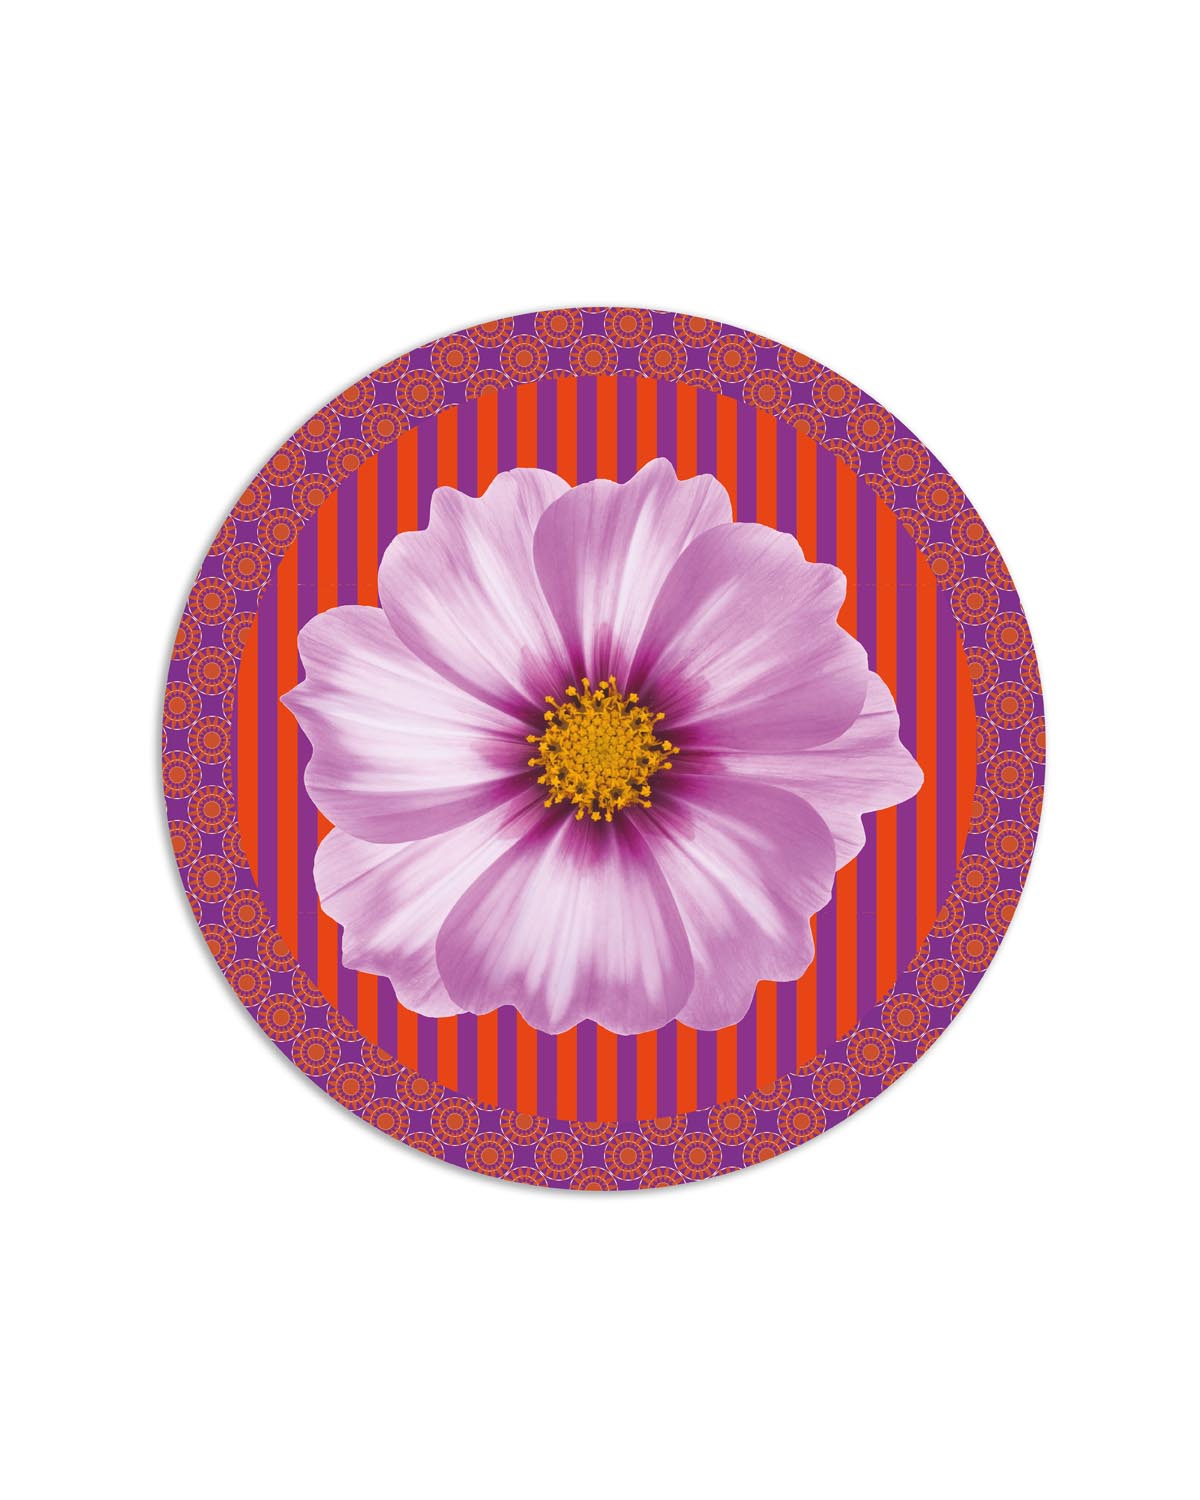 tovaglietta tonda flower power fiore lilla arancio viola